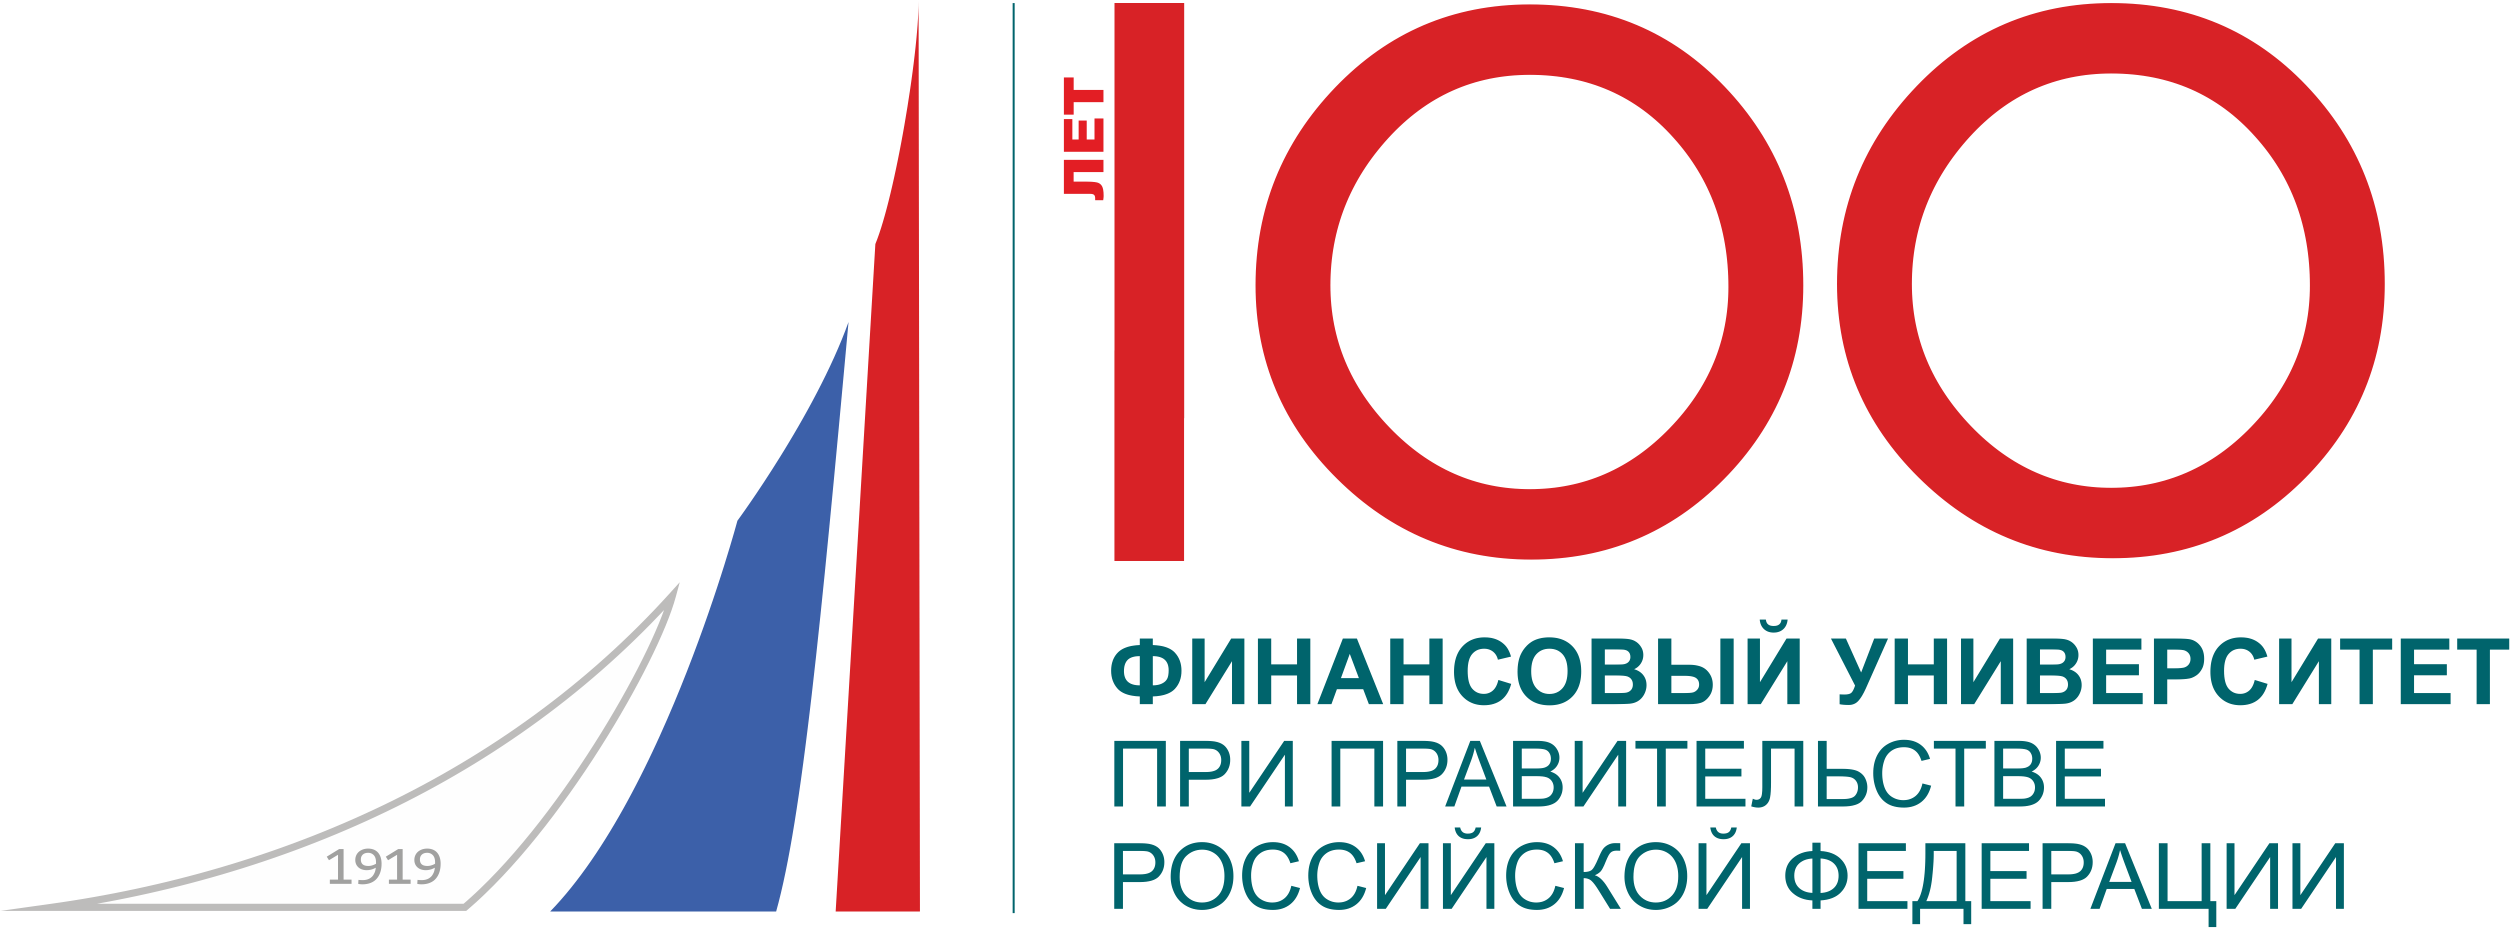 Финансовый университет логотип на прозрачном фоне фото